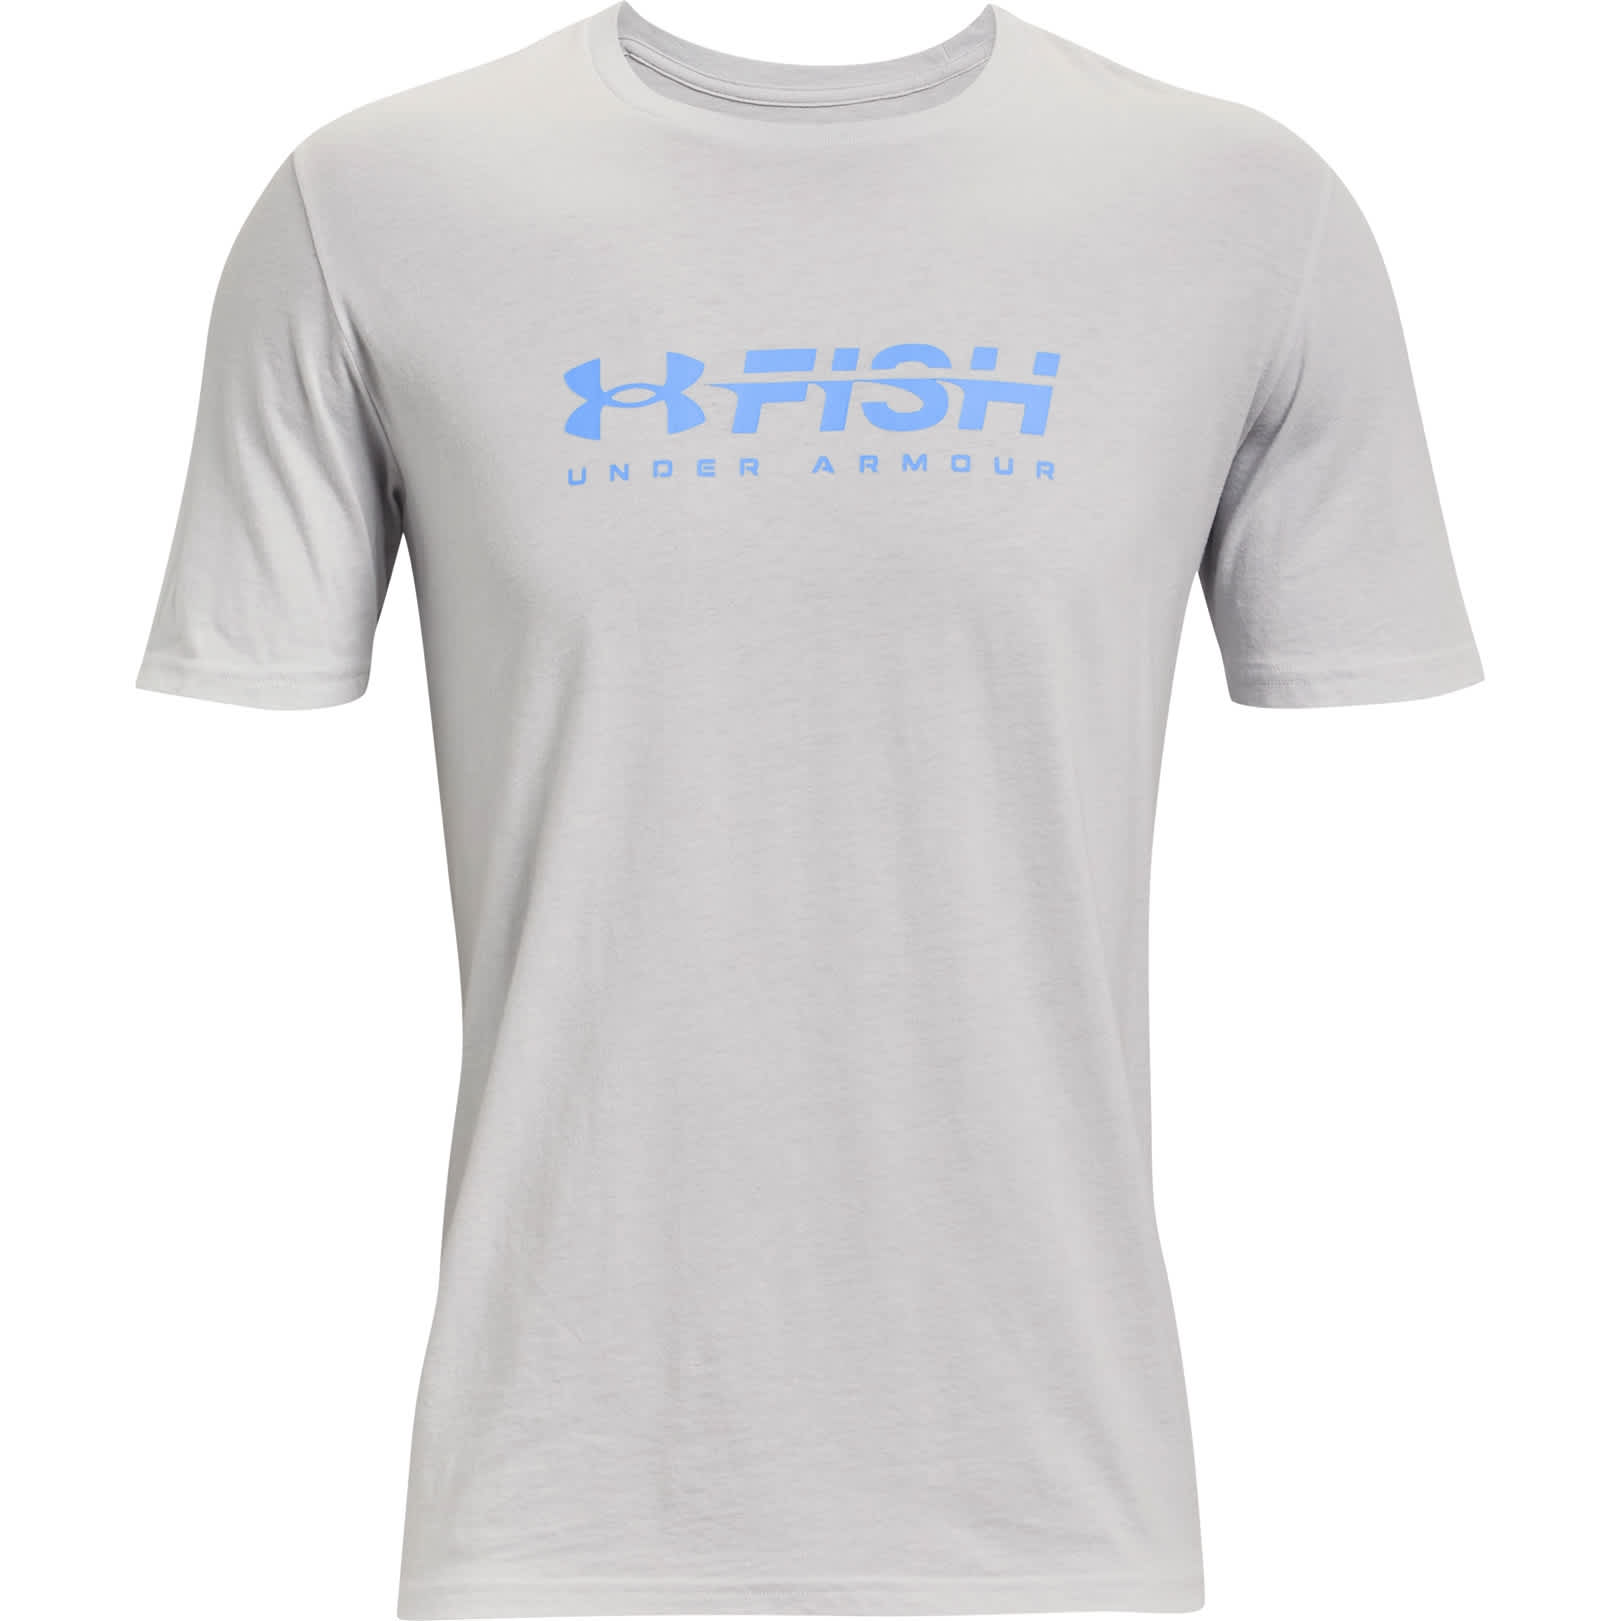 Under Armour Fish Hook Logo Short Sleeve Tee for Men - Sonar Blue/Carolina  Blue/Carolina Blue